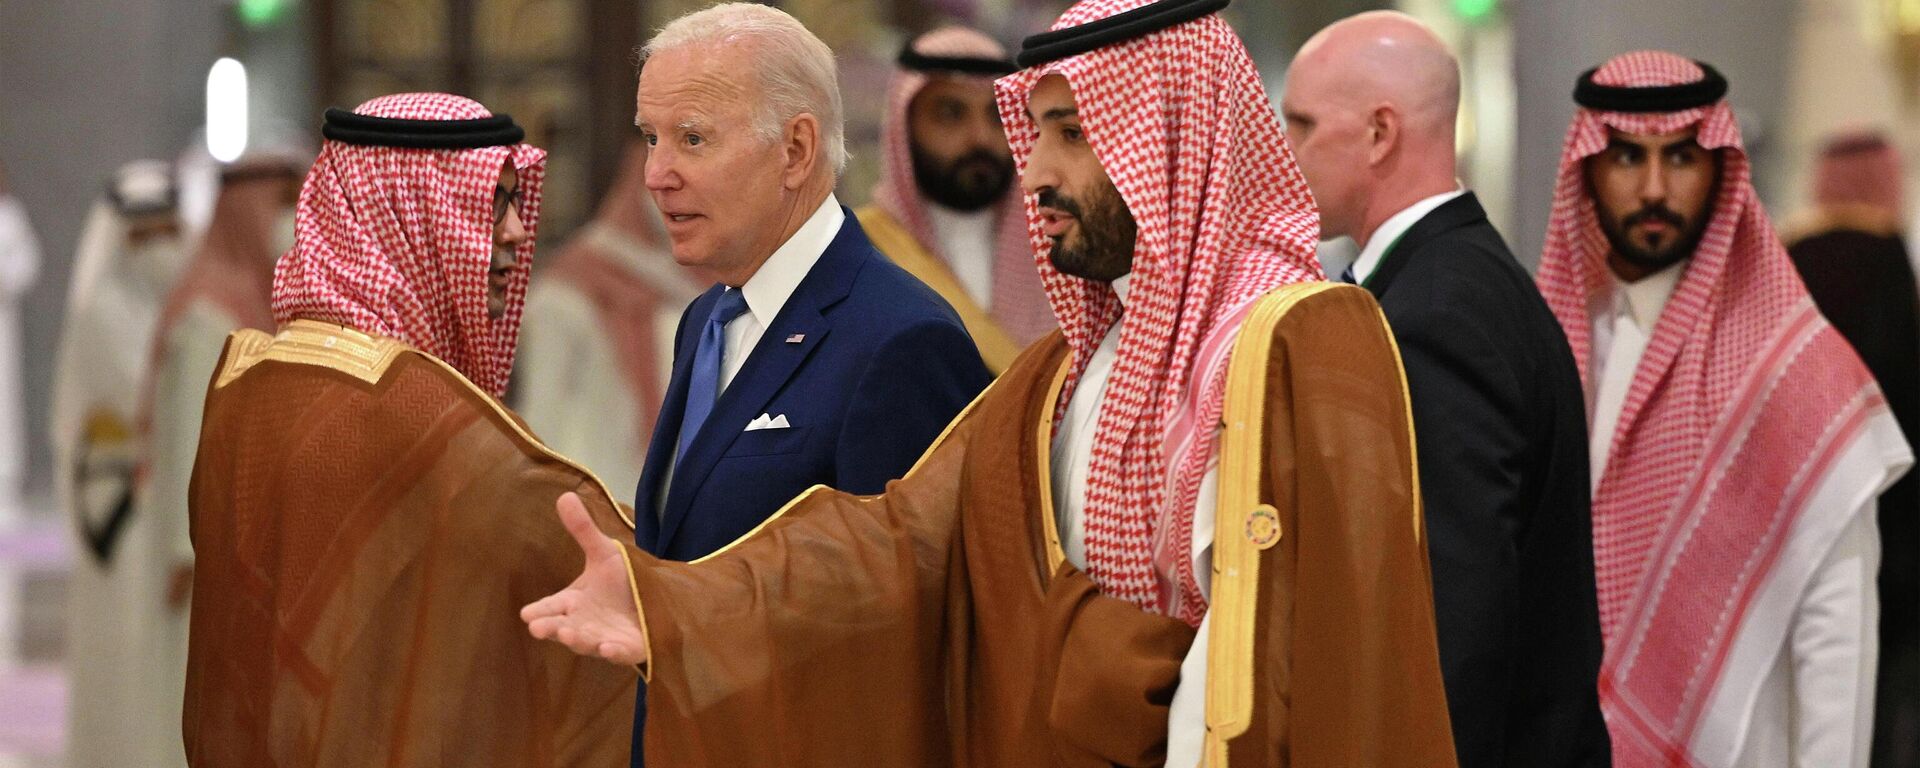 Tổng thống Hoa Kỳ Joe Biden và Thái tử Ả Rập Saudi Mohammed bin Salman tại một khách sạn ở Jeddah, Ả Rập Saudi, ngày thứ Bảy 16/7/2022 - Sputnik Việt Nam, 1920, 18.10.2022